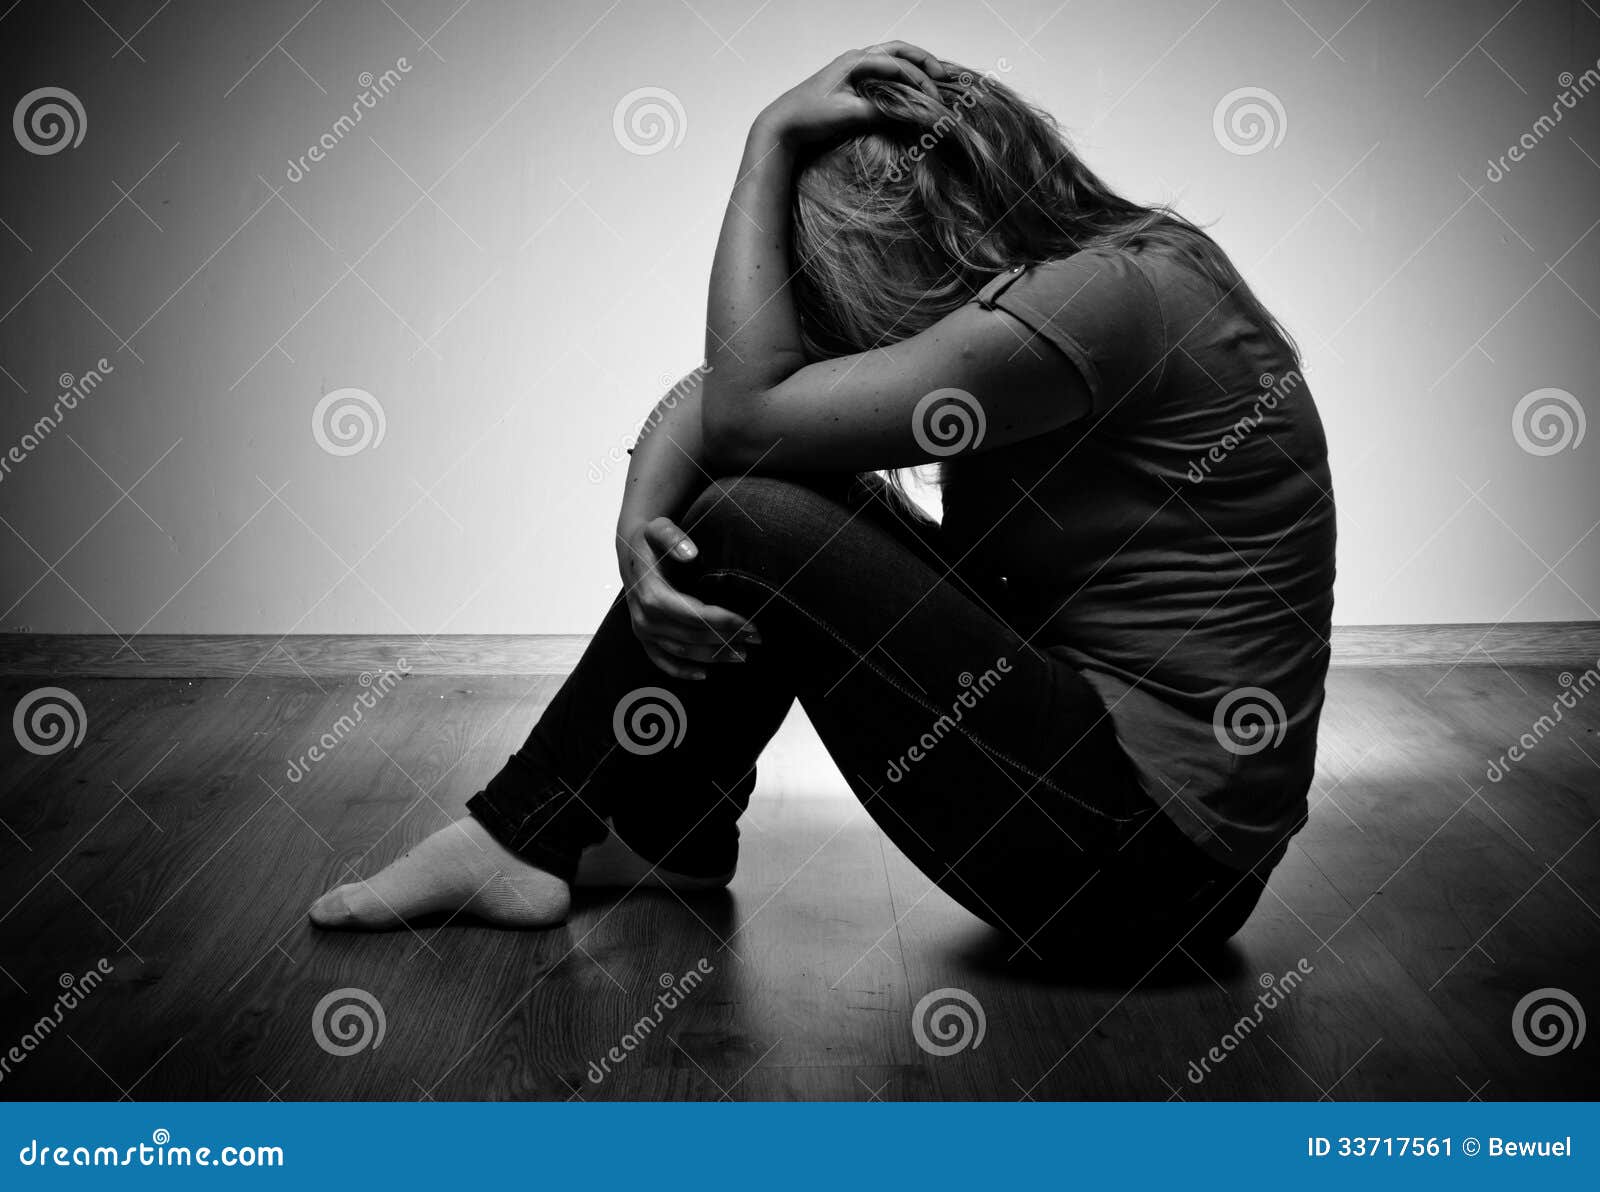 Sad woman sitting alone stock image. Image of beautiful - 33717561